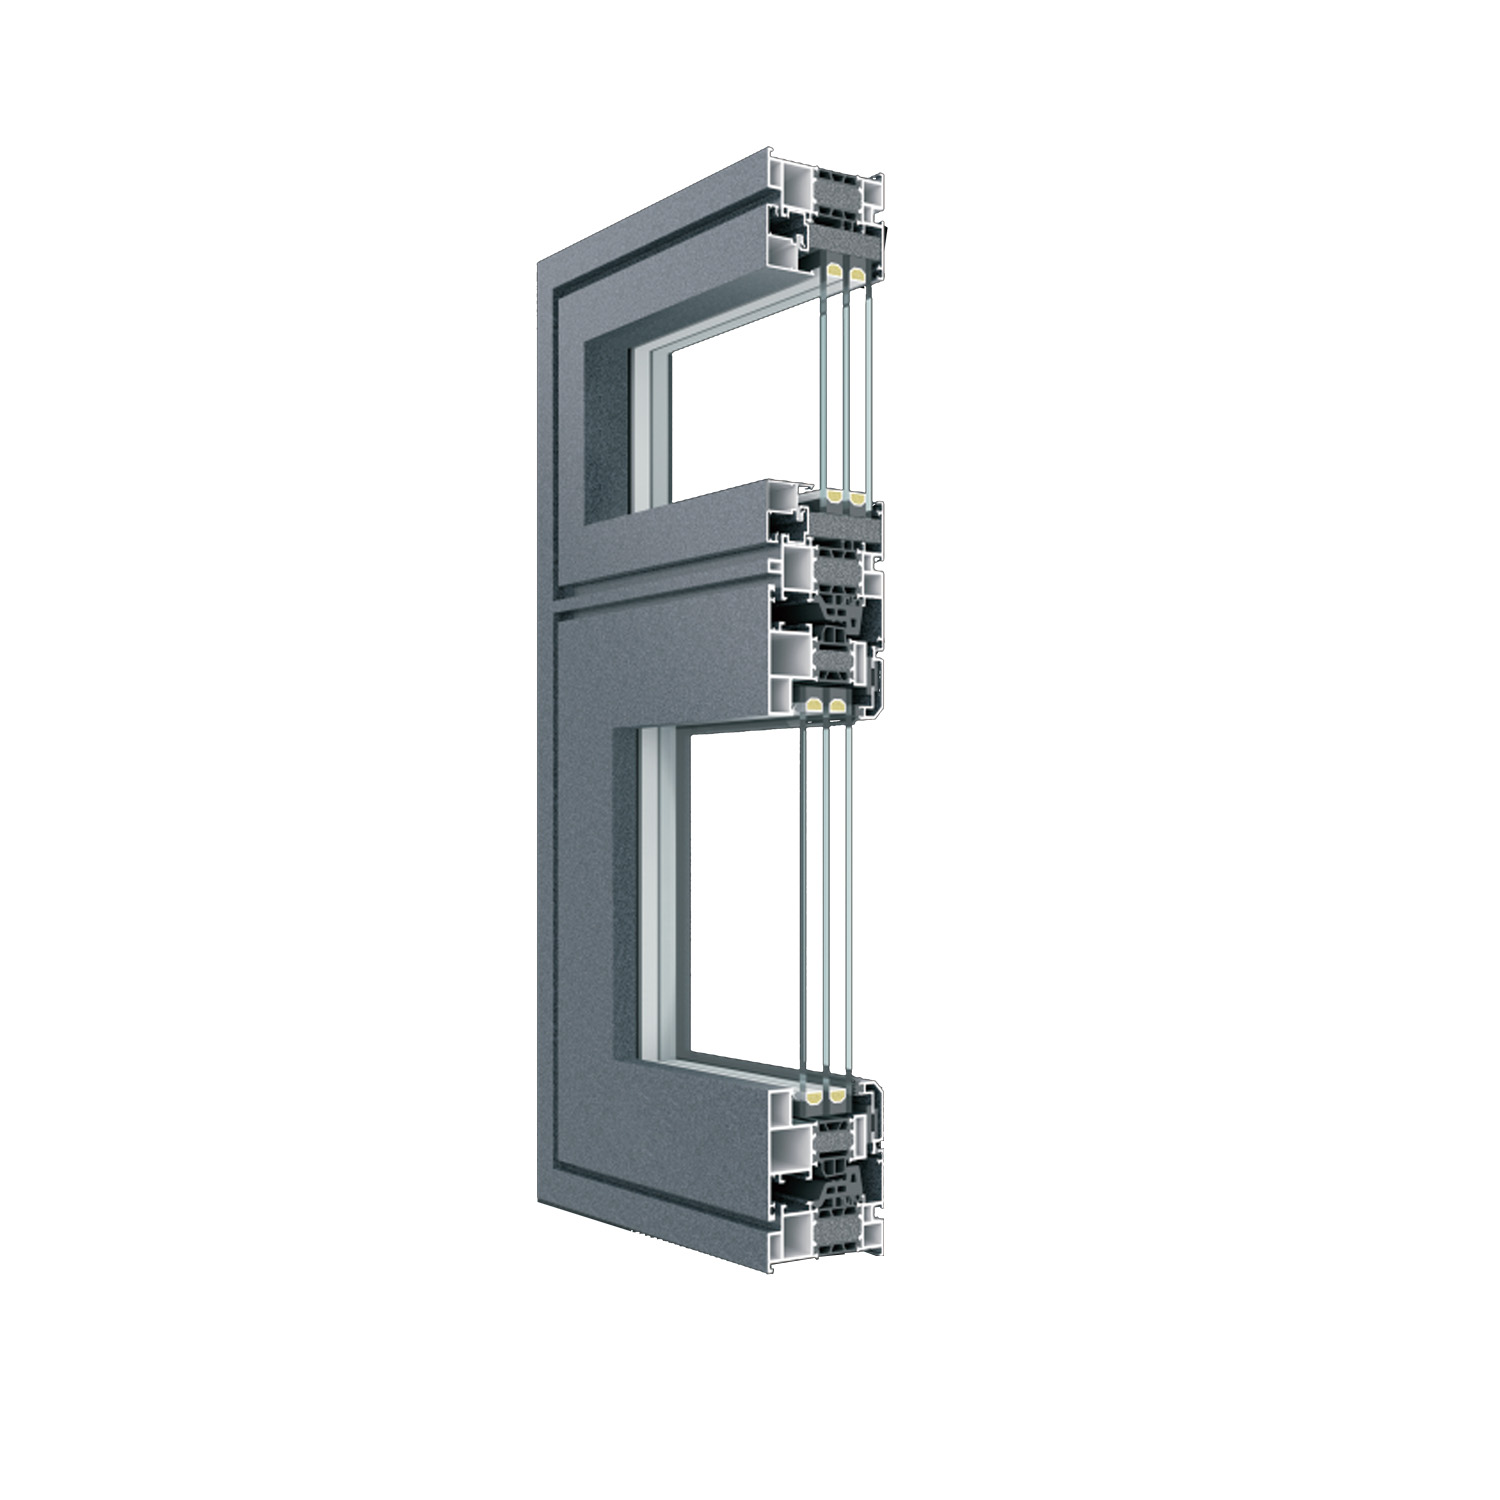 Aluminium Profile Building Material Window and door